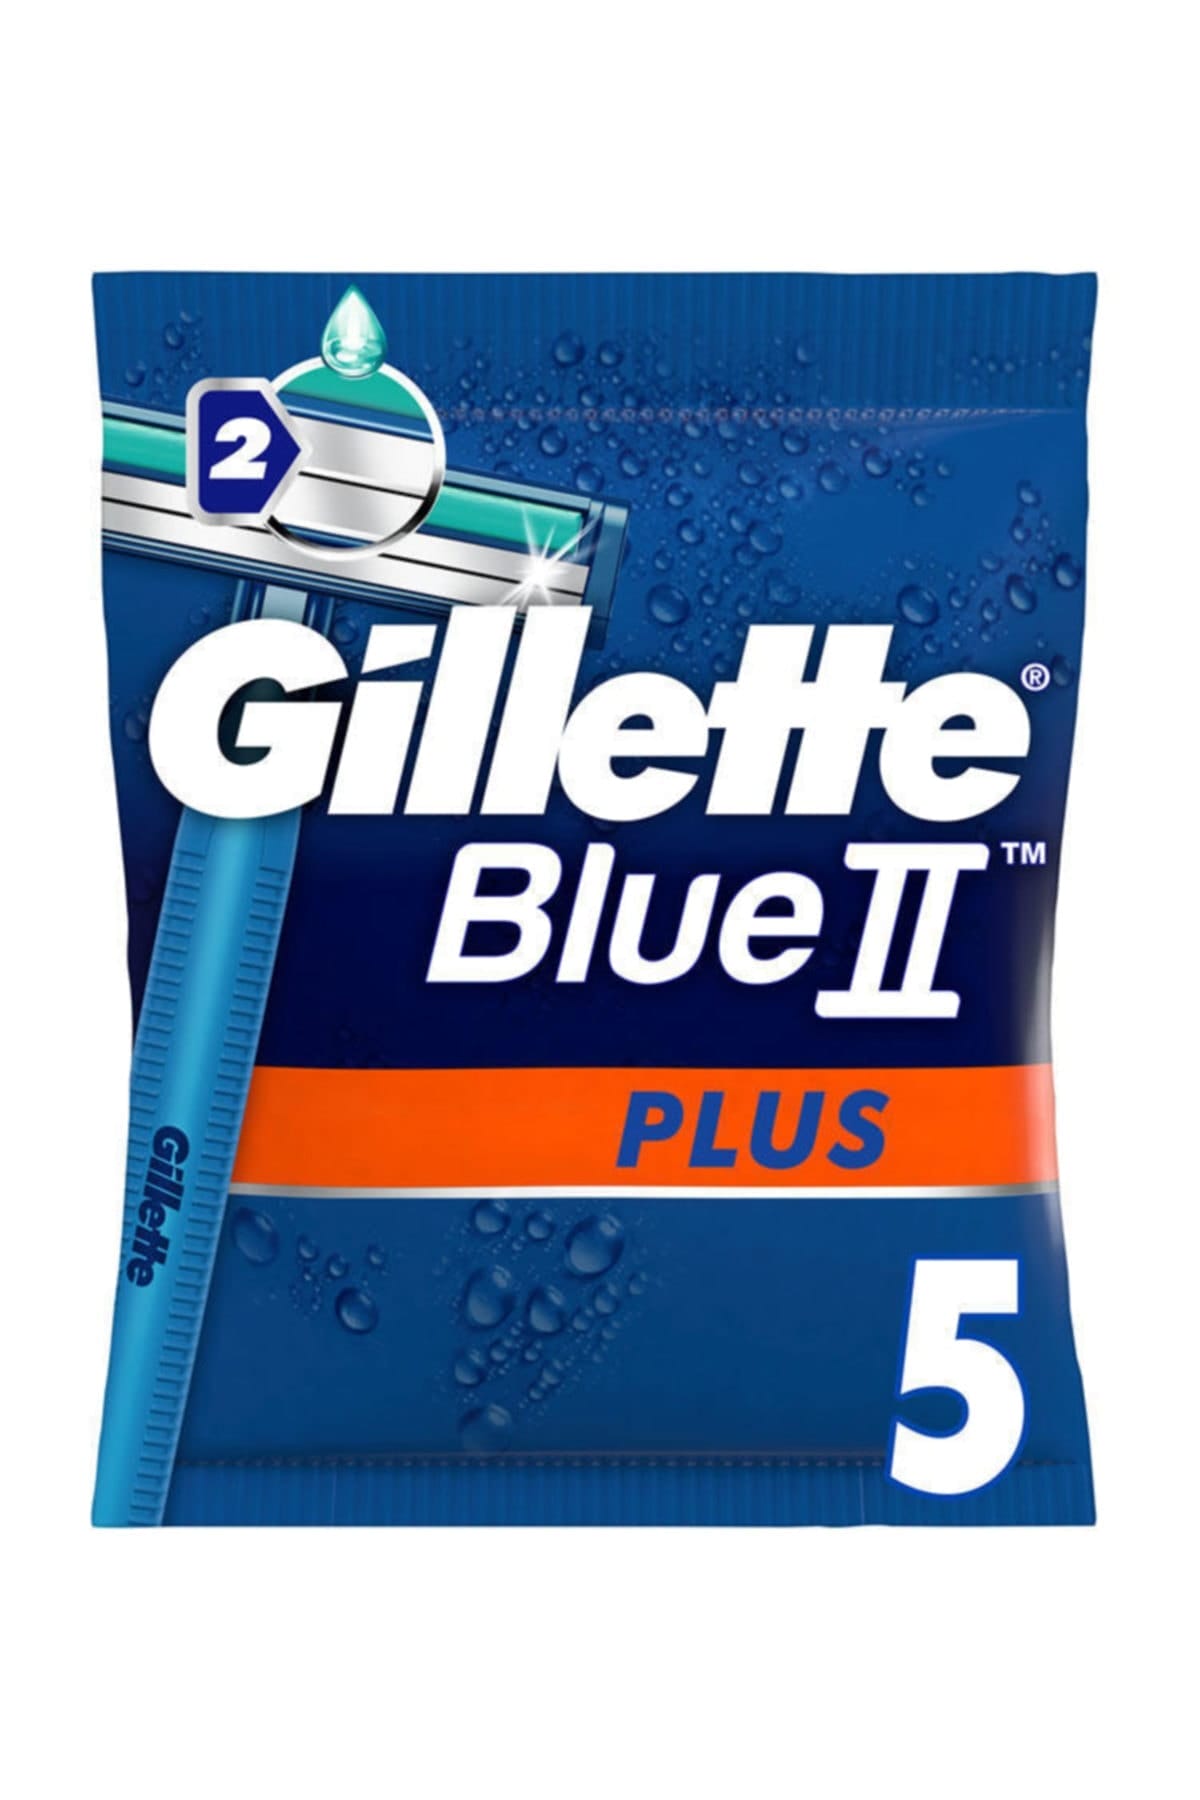 Gillette Blue Ii Disposable   5 Adet